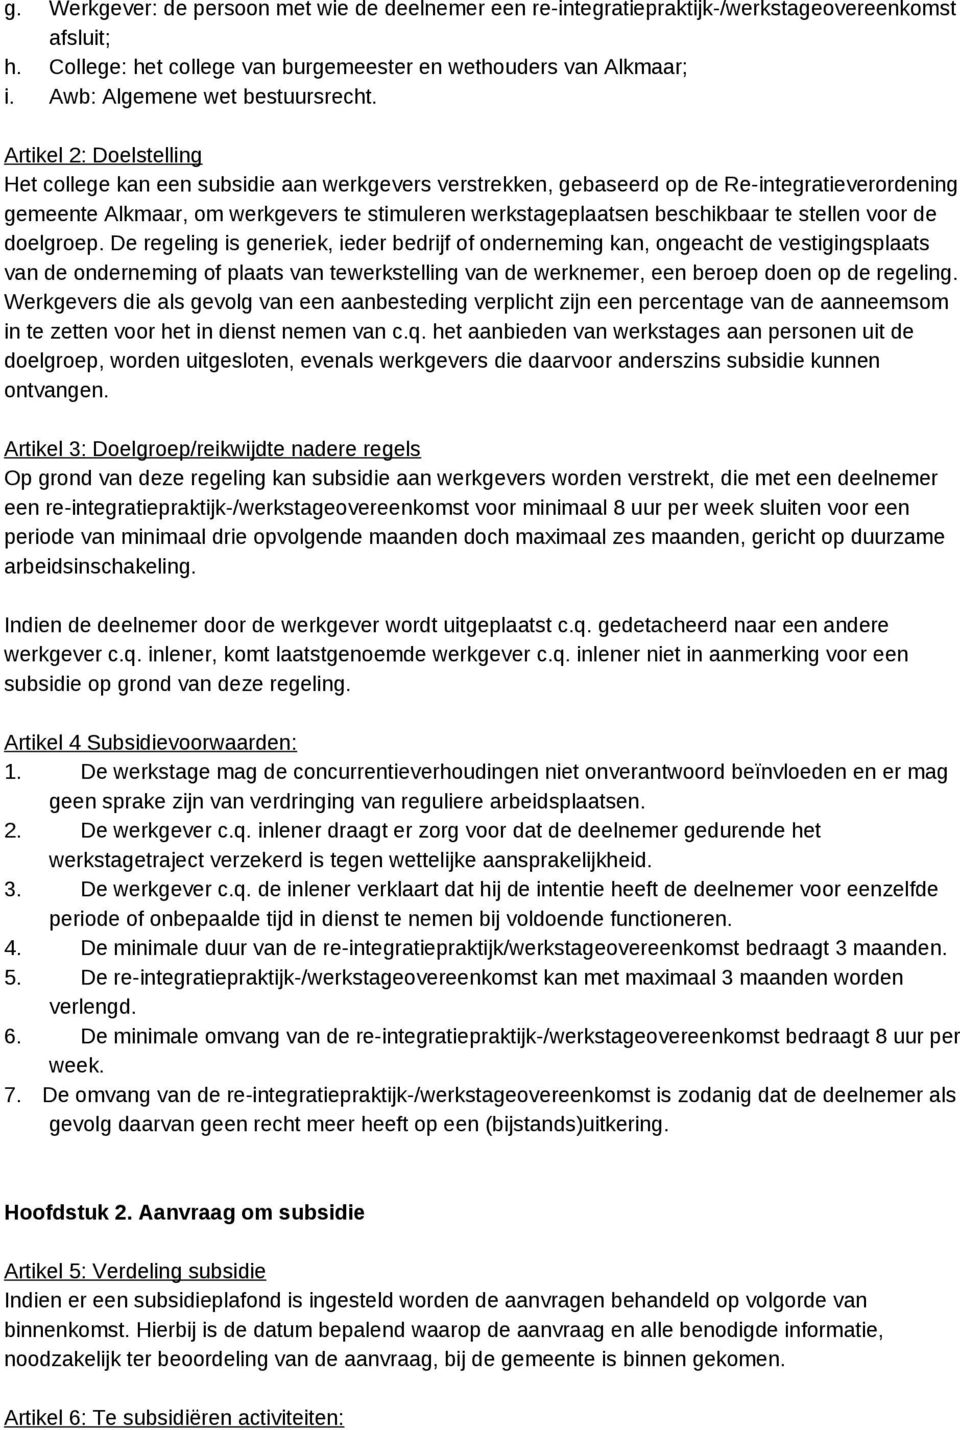 Artikel 2: Doelstelling Het college kan een subsidie aan werkgevers verstrekken, gebaseerd op de Re-integratieverordening gemeente Alkmaar, om werkgevers te stimuleren werkstageplaatsen beschikbaar